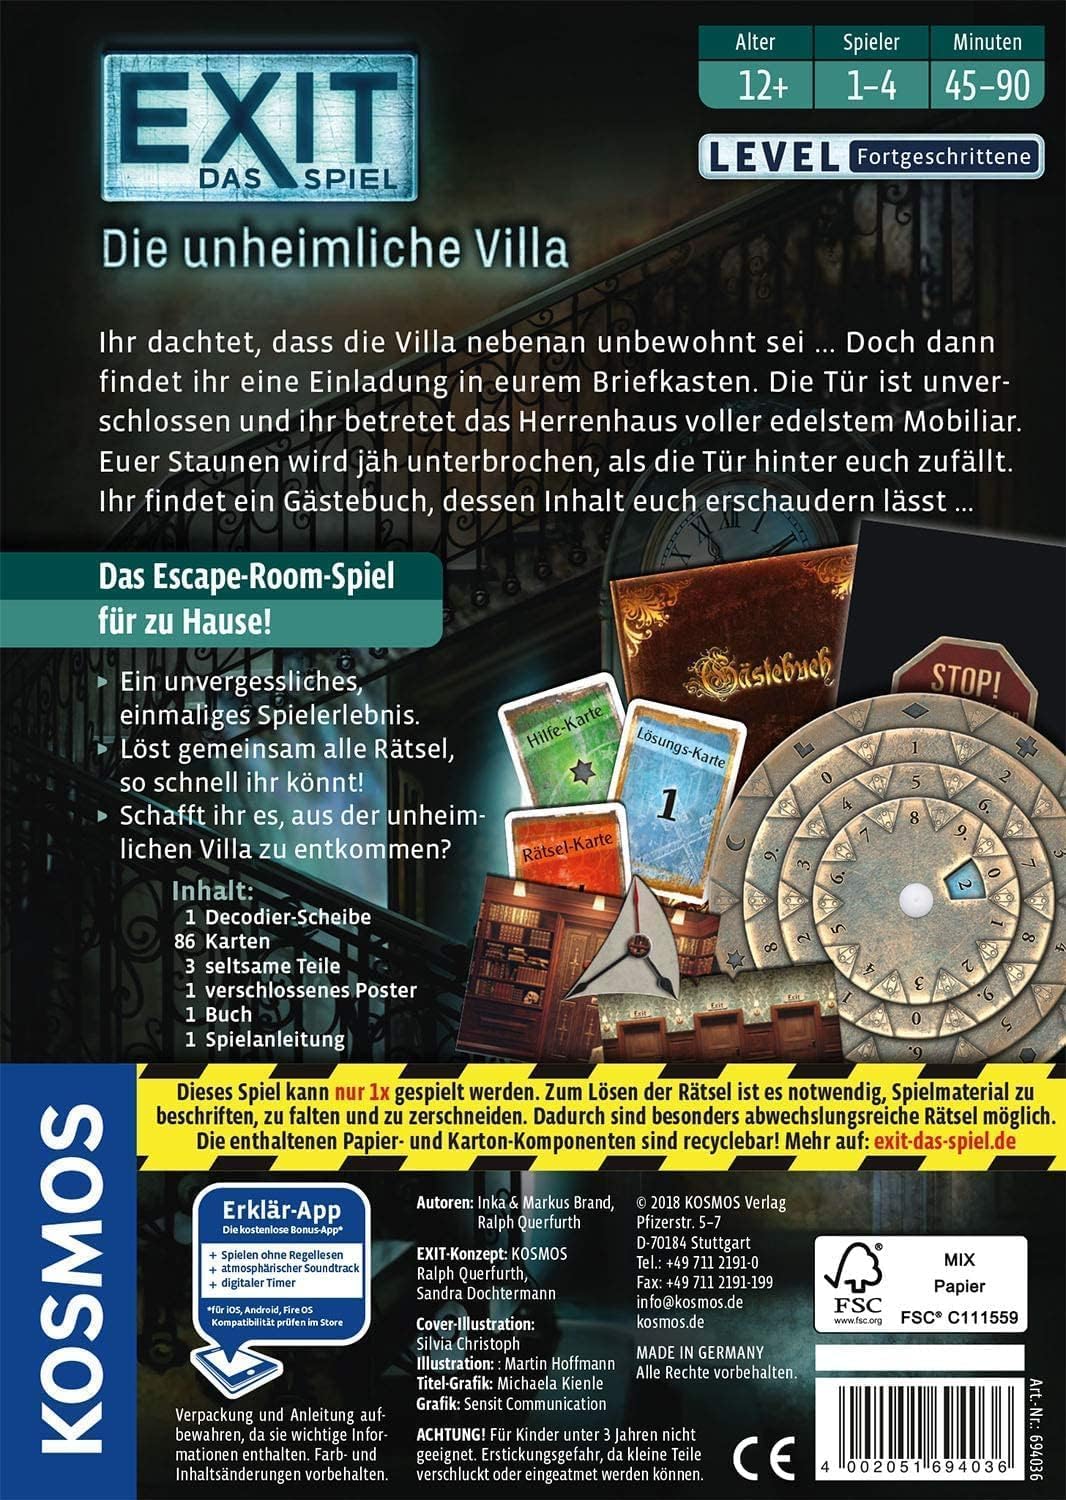 Kosmos 694036 EXIT® - Das Spiel - Die unheimliche Villa, Level: Fortgeschrittene, Escape Room Spiel, EXIT Game für 1-4 Spieler ab 12 Jahre, EIN einmaliges Gesellschaftsspiel